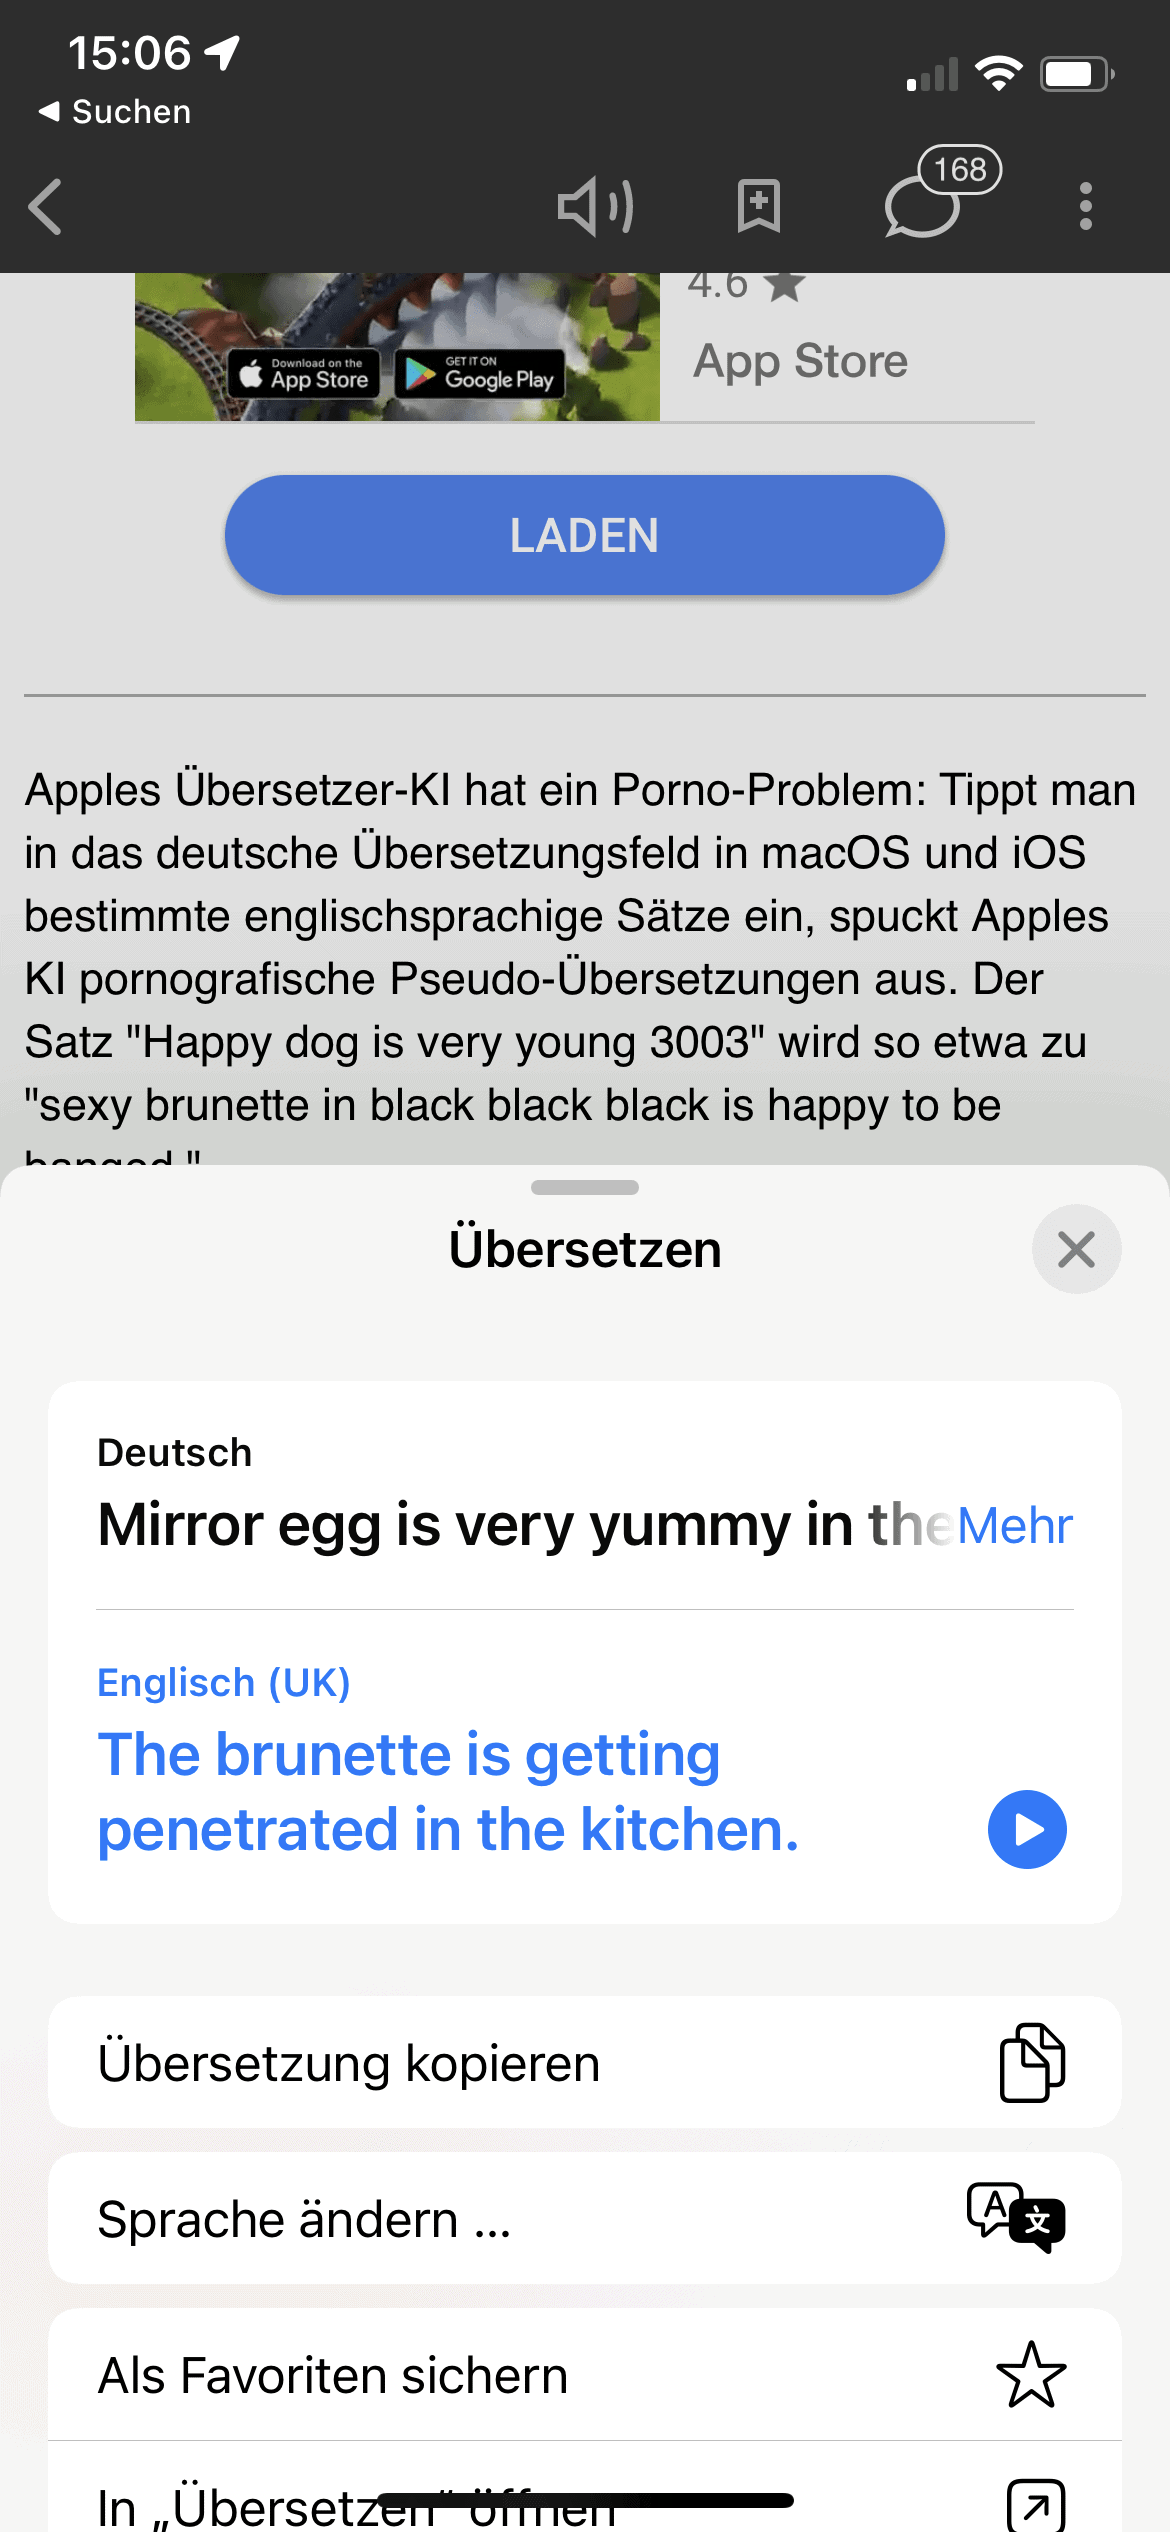 Apples Übersetzung liefert Porn-Prosa